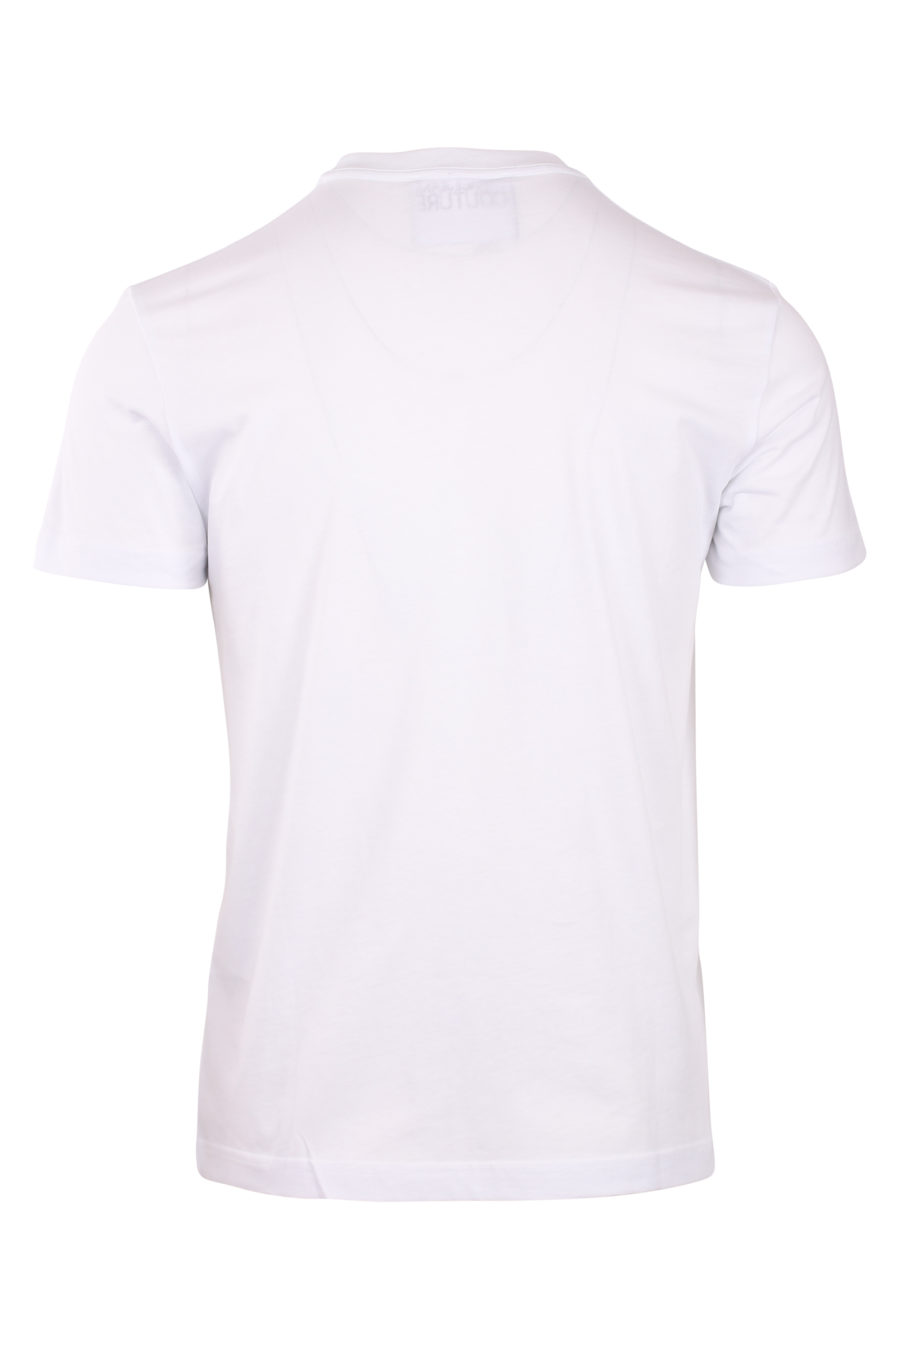 Camiseta blanca con maxilogo tornasol - IMG 0763